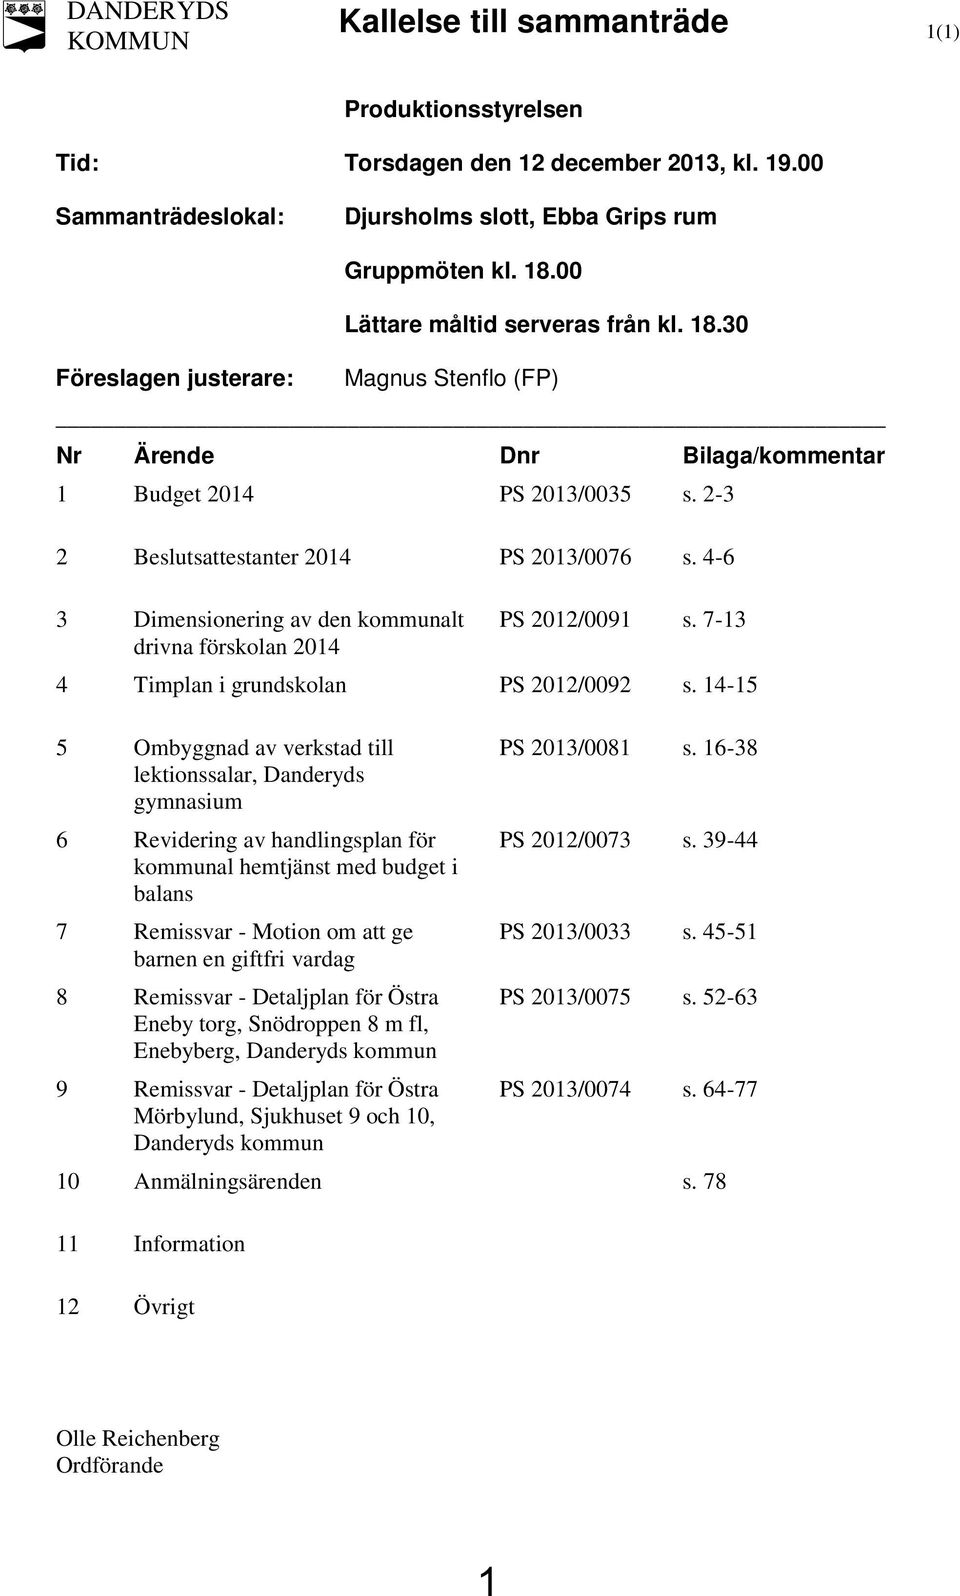 2-3 2 Beslutsattestanter 2014 PS 2013/0076 s. 4-6 3 Dimensionering av den kommunalt PS 2012/0091 s. 7-13 drivna förskolan 2014 4 Timplan i grundskolan PS 2012/0092 s.